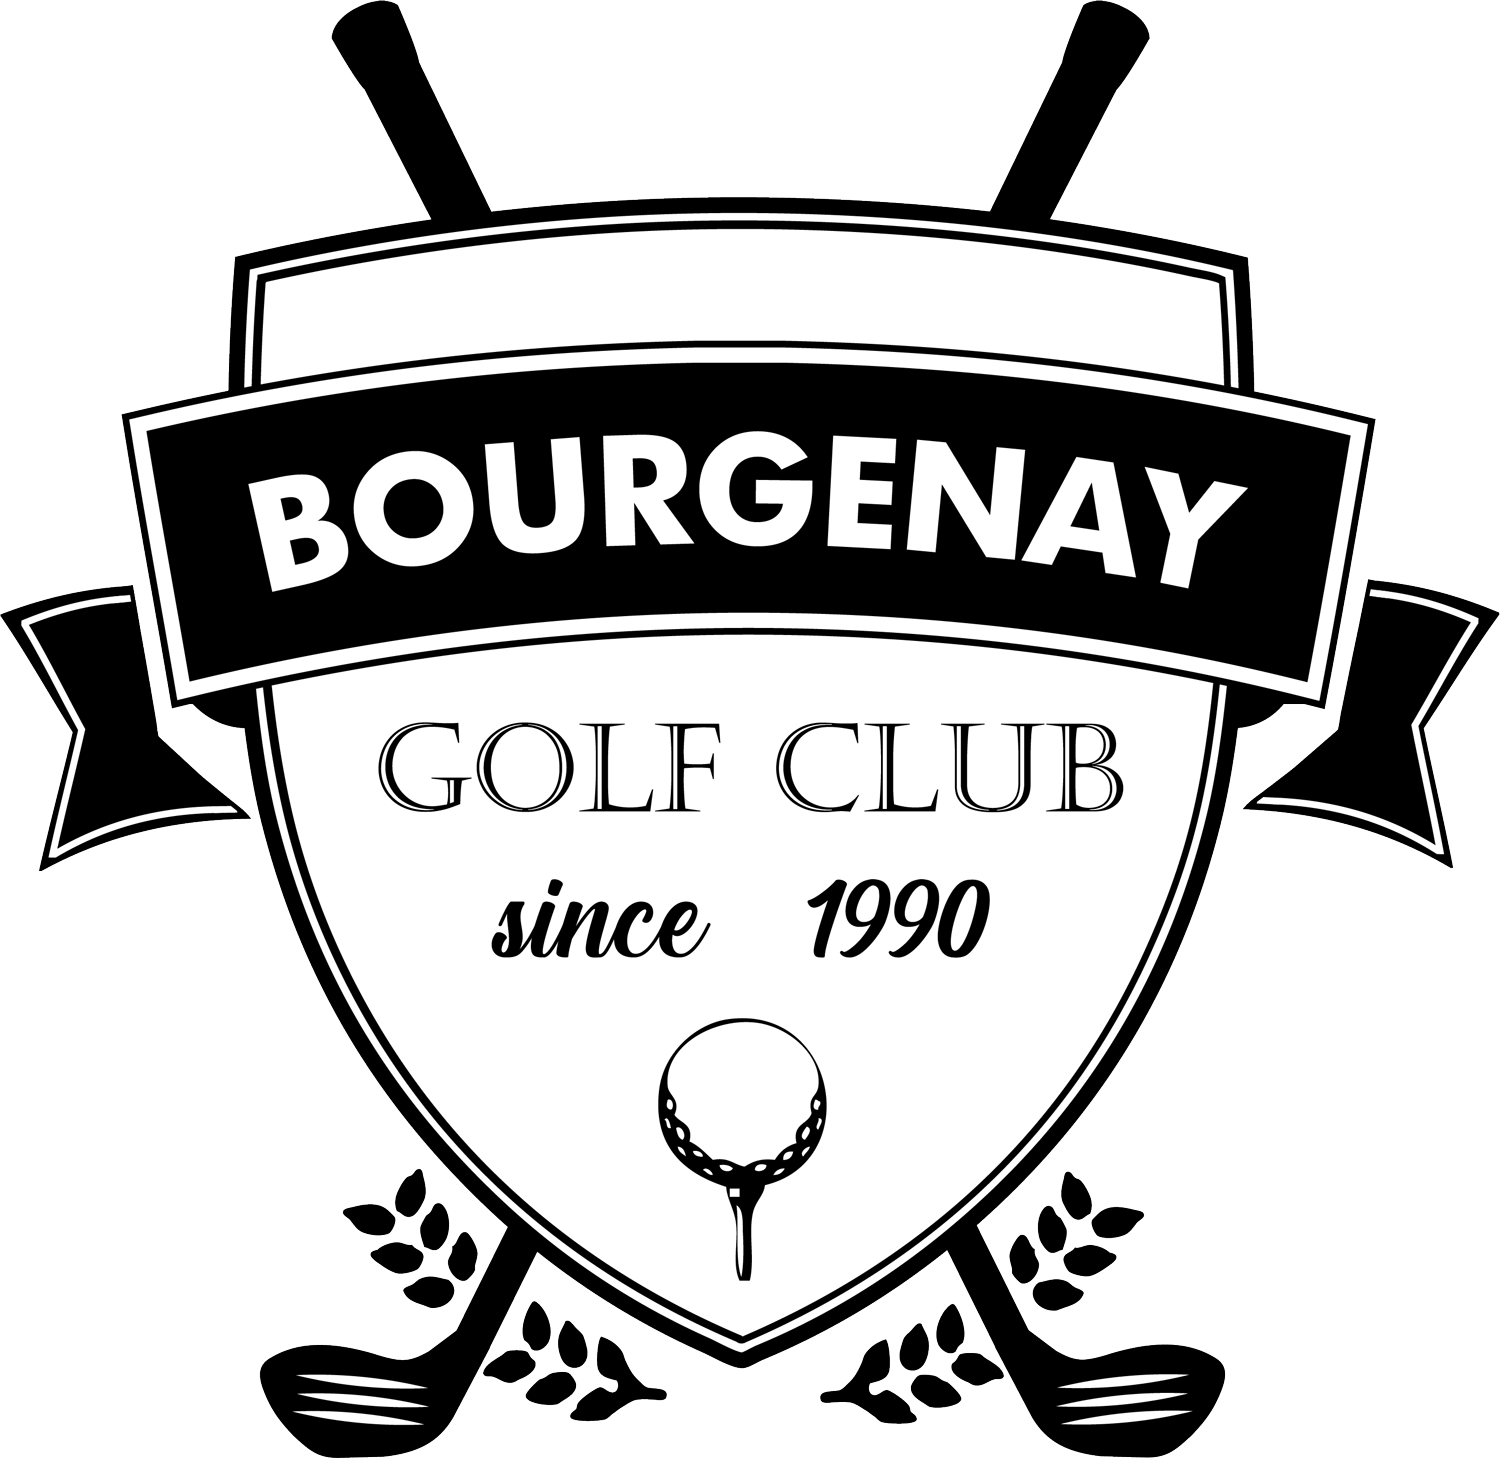 Bourgenay golf club